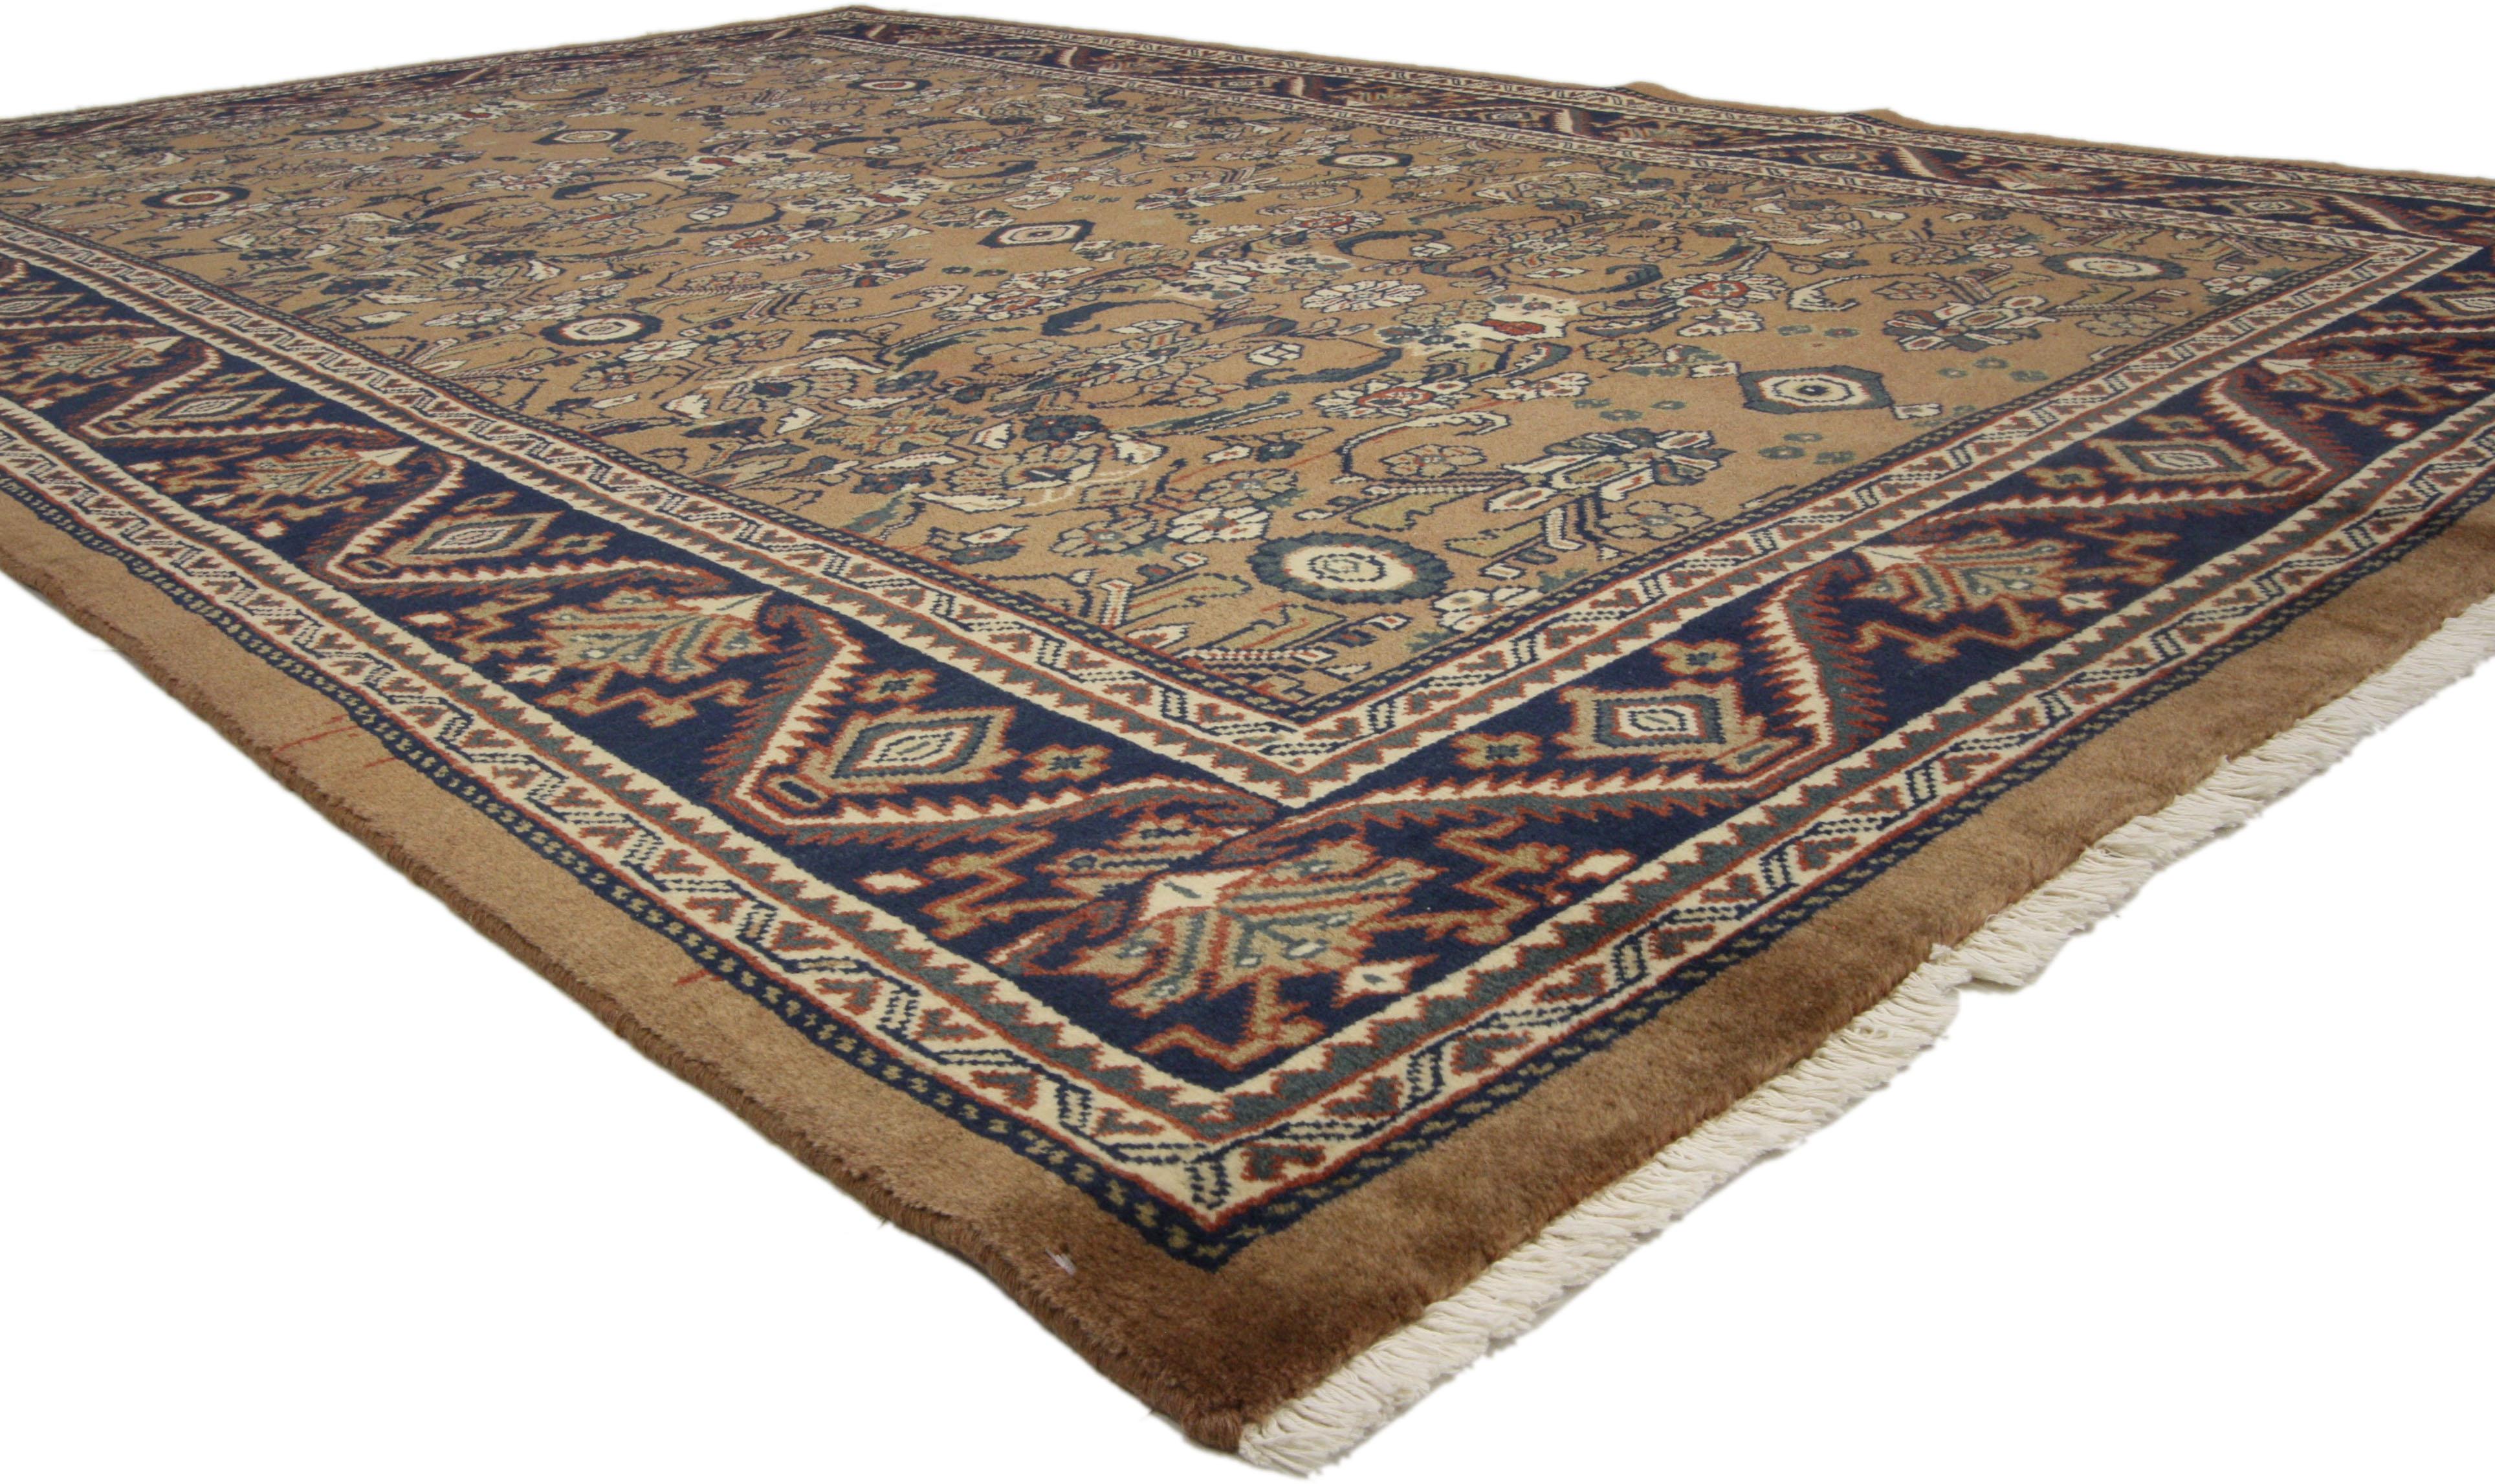 75834 Tapis Vintage Persian Mahal, 06'08 x 10'02. Chaleureux et accueillant avec une élégance intemporelle, ce tapis persan vintage Mahal en laine noué à la main est une vision captivante de la beauté tissée. Les couleurs terreuses du design à